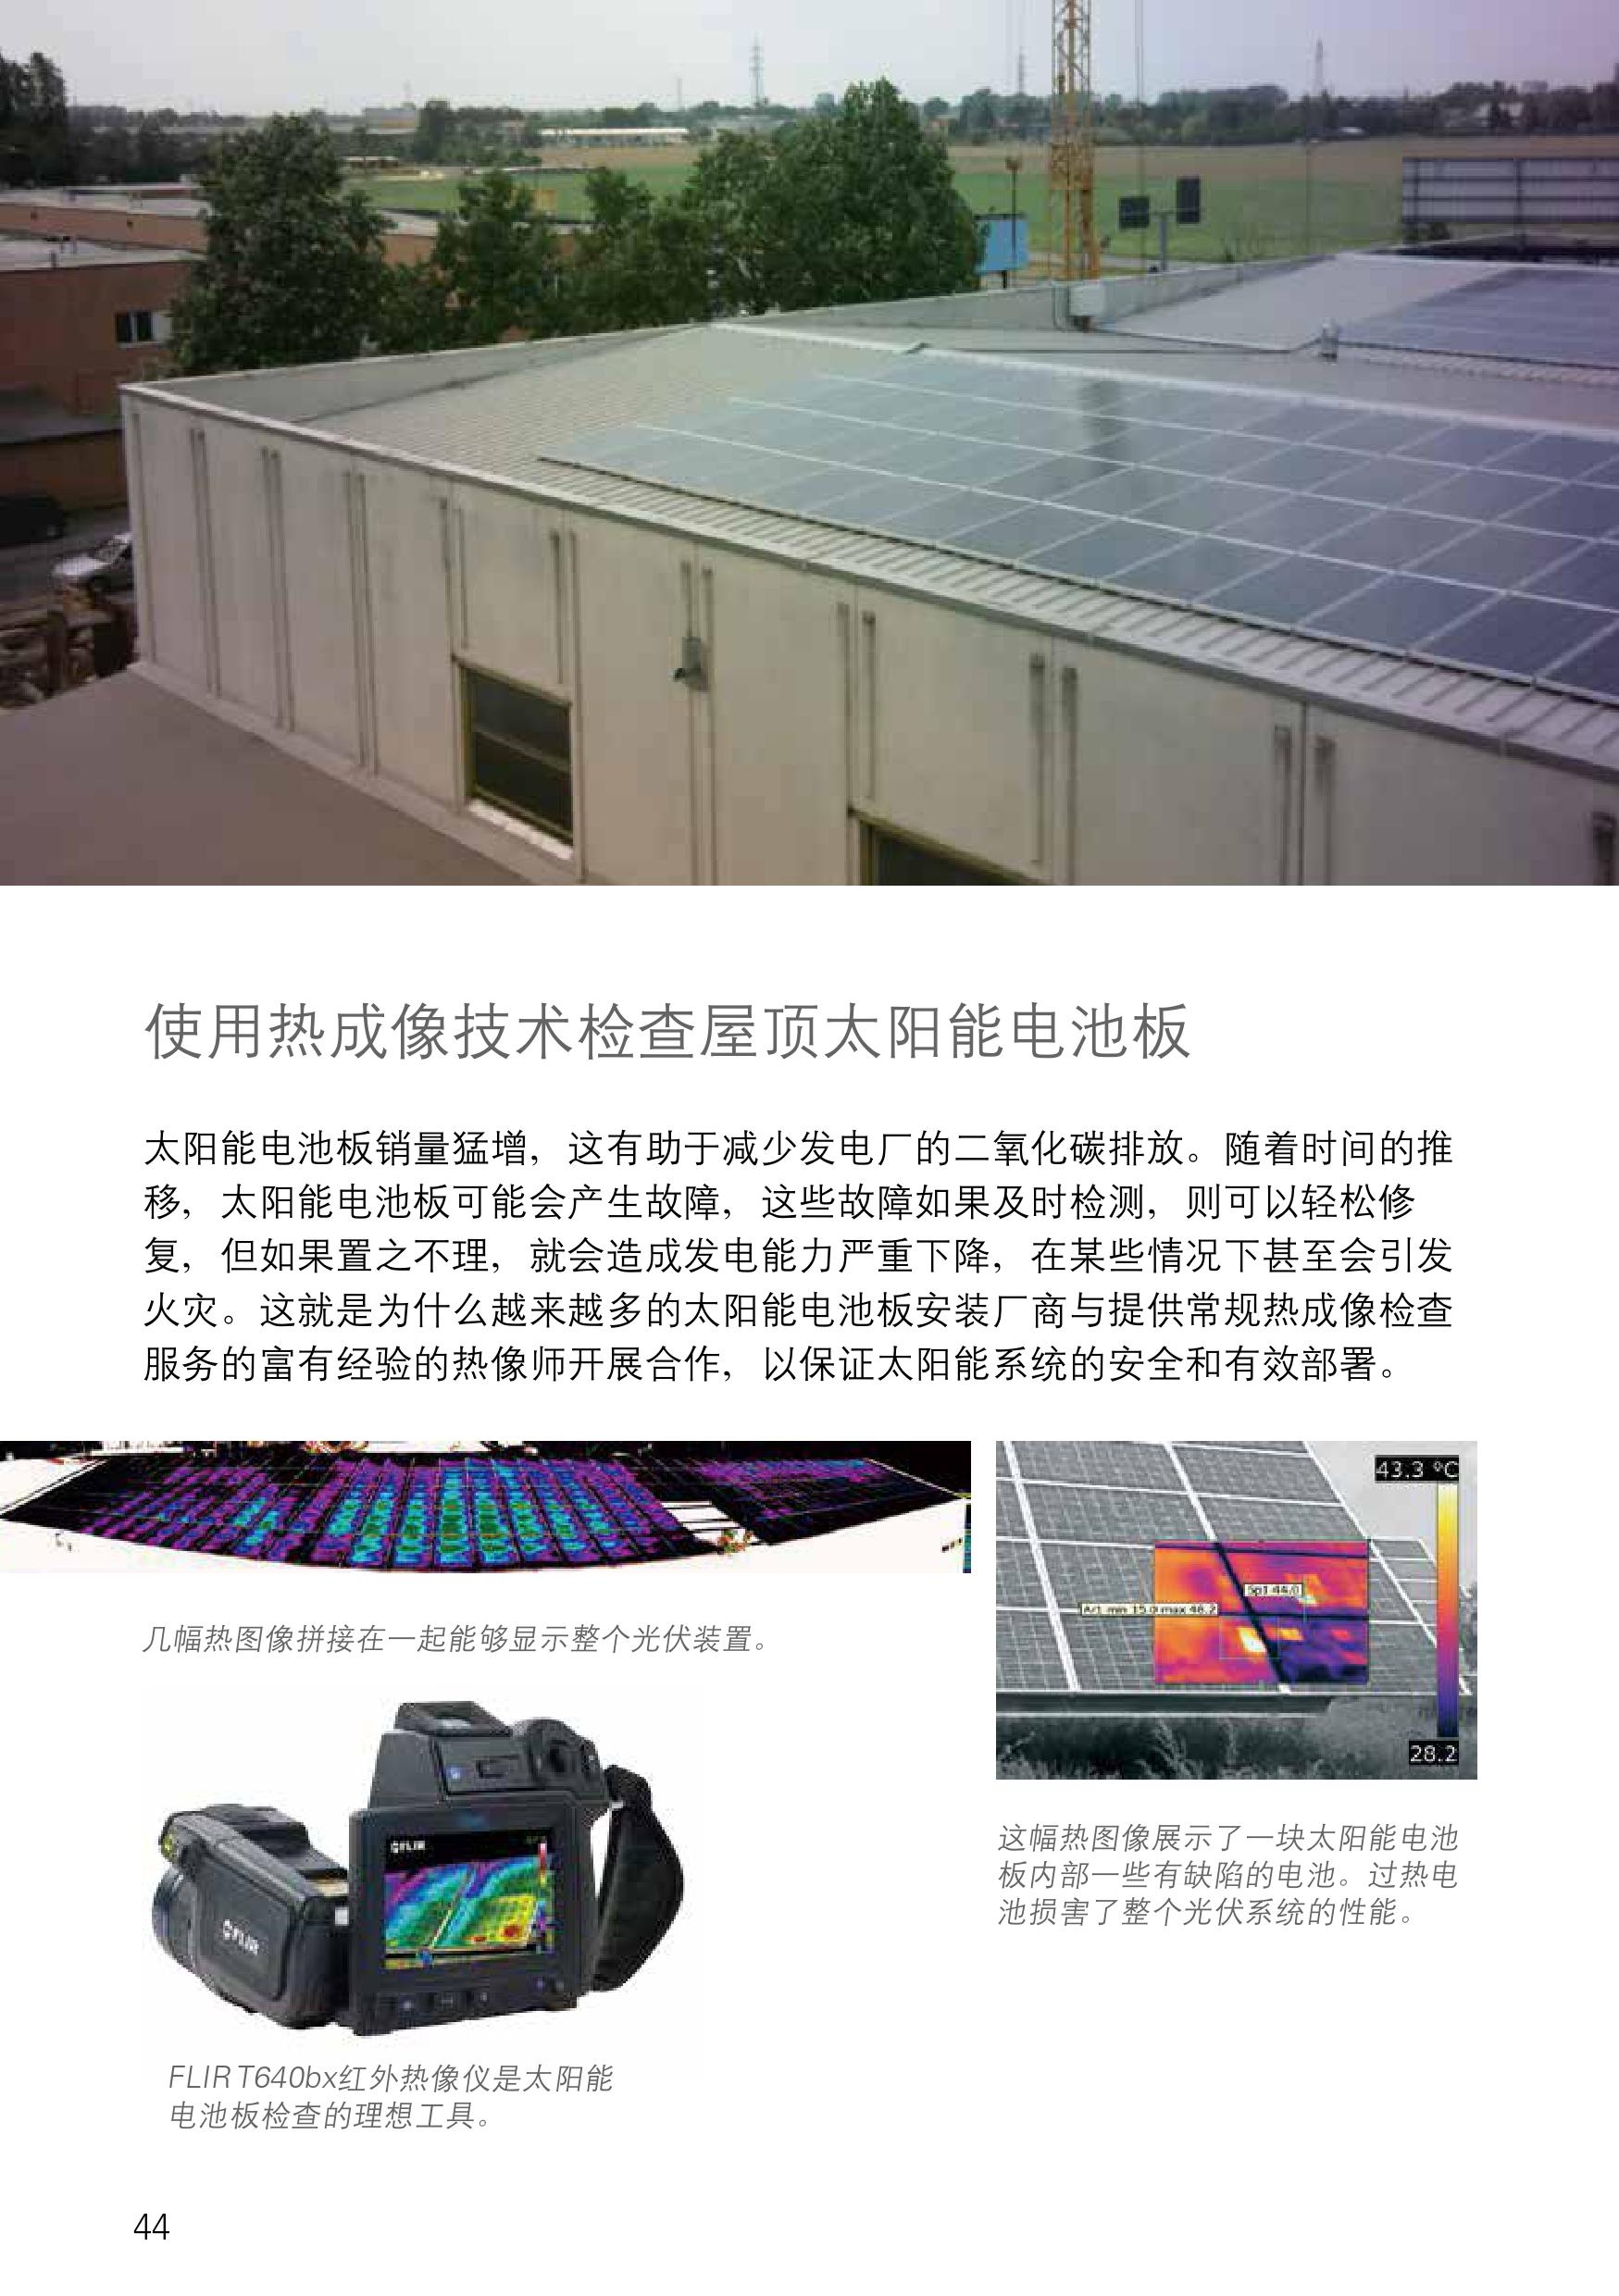 菲力尔：使用热成像技术检查屋顶太阳能电池板